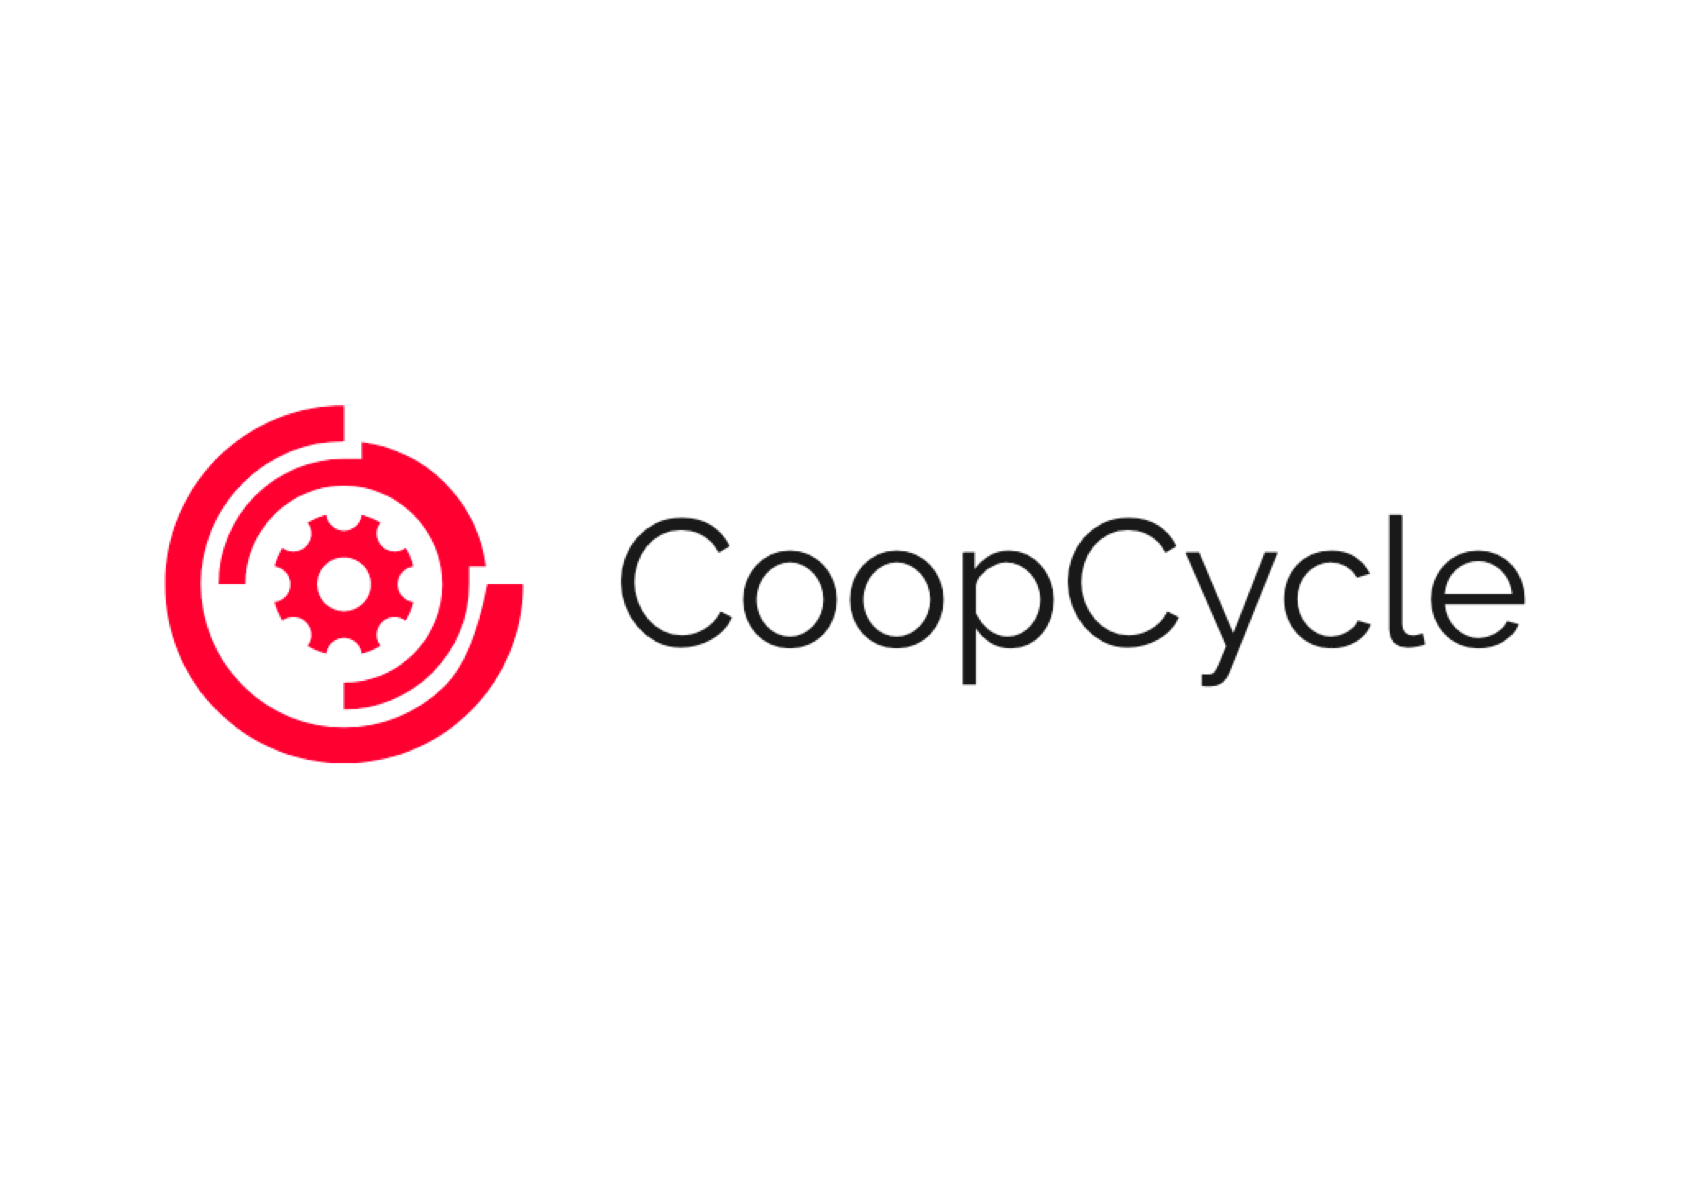 CoopCycle